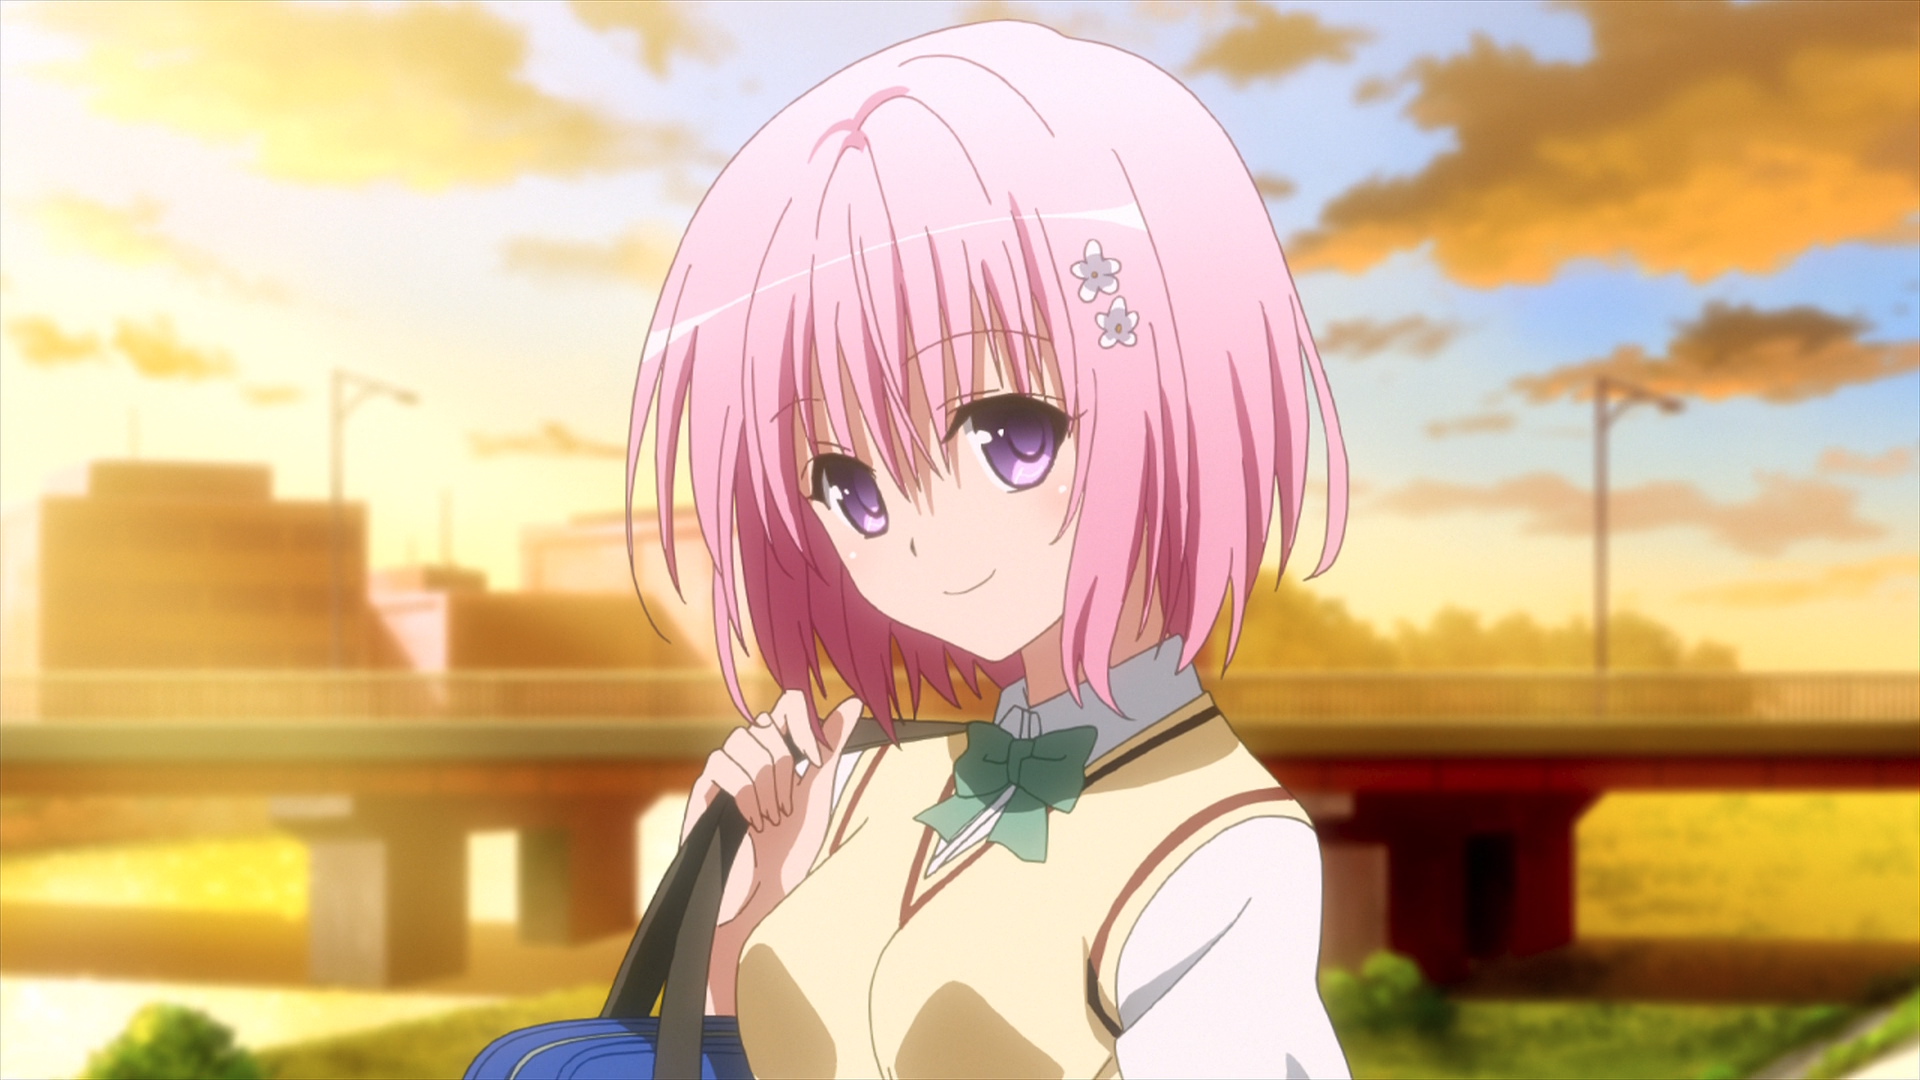 Anime 1920x1080 Momo Velia Deviluke To Love-ru pink hair looking at viewer smiling anime girls hairpins